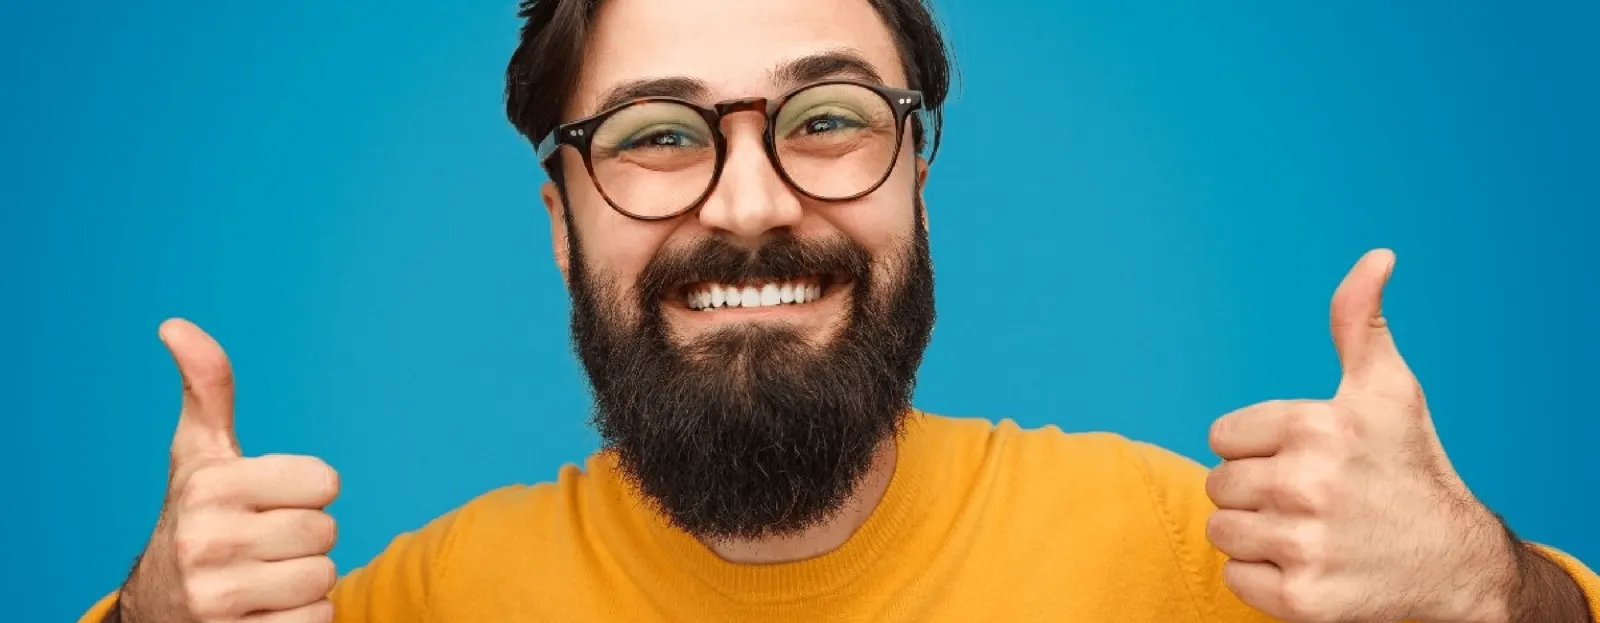 5 cosas que no debes hacer si quieres una barba larga bien cuidada